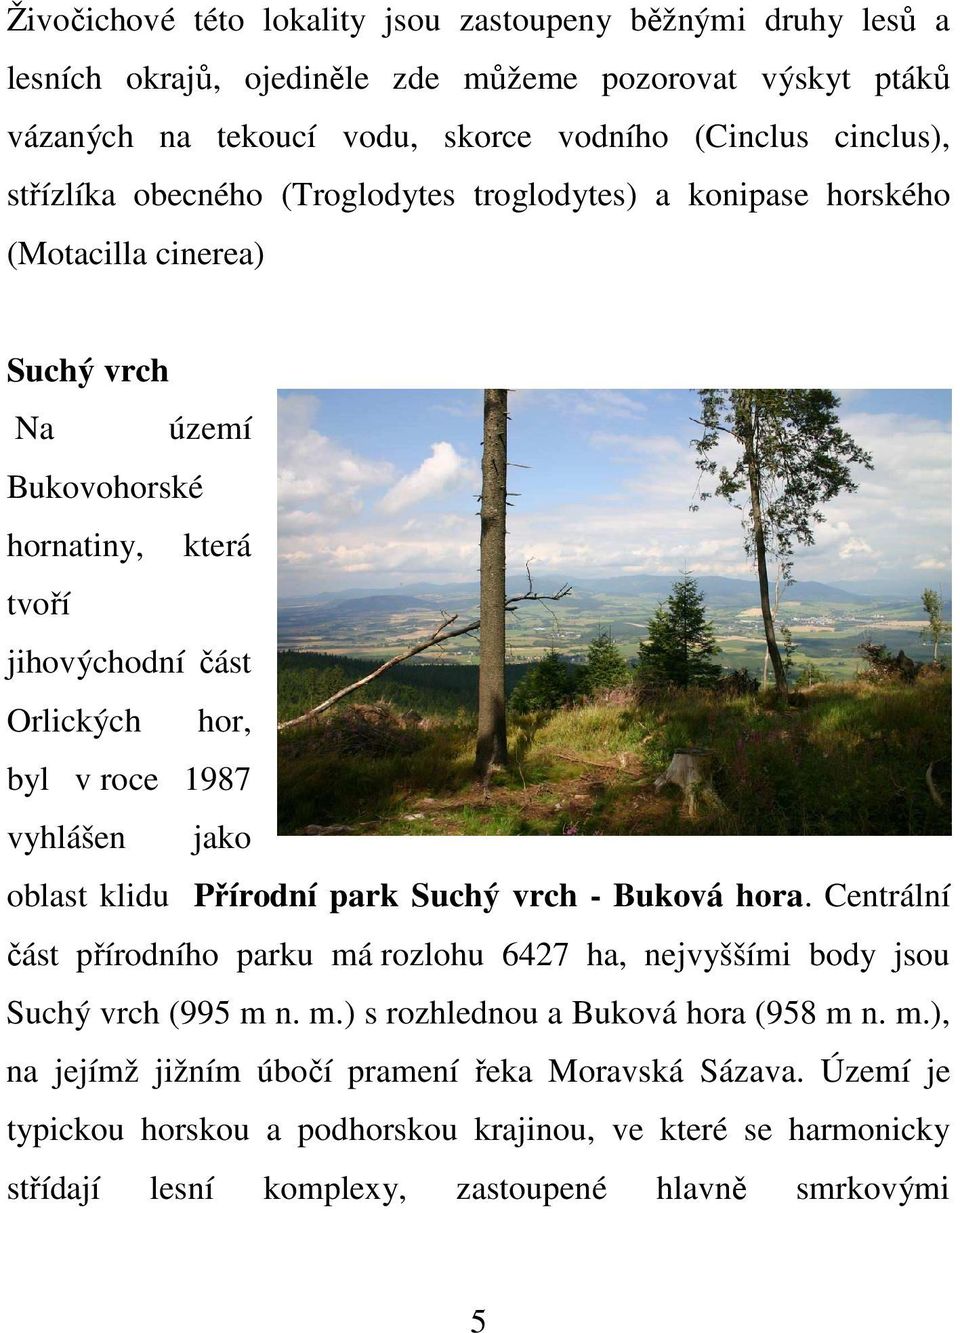 vyhlášen jako oblast klidu Přírodní park Suchý vrch - Buková hora. Centrální část přírodního parku má rozlohu 6427 ha, nejvyššími body jsou Suchý vrch (995 m n. m.) s rozhlednou a Buková hora (958 m n.